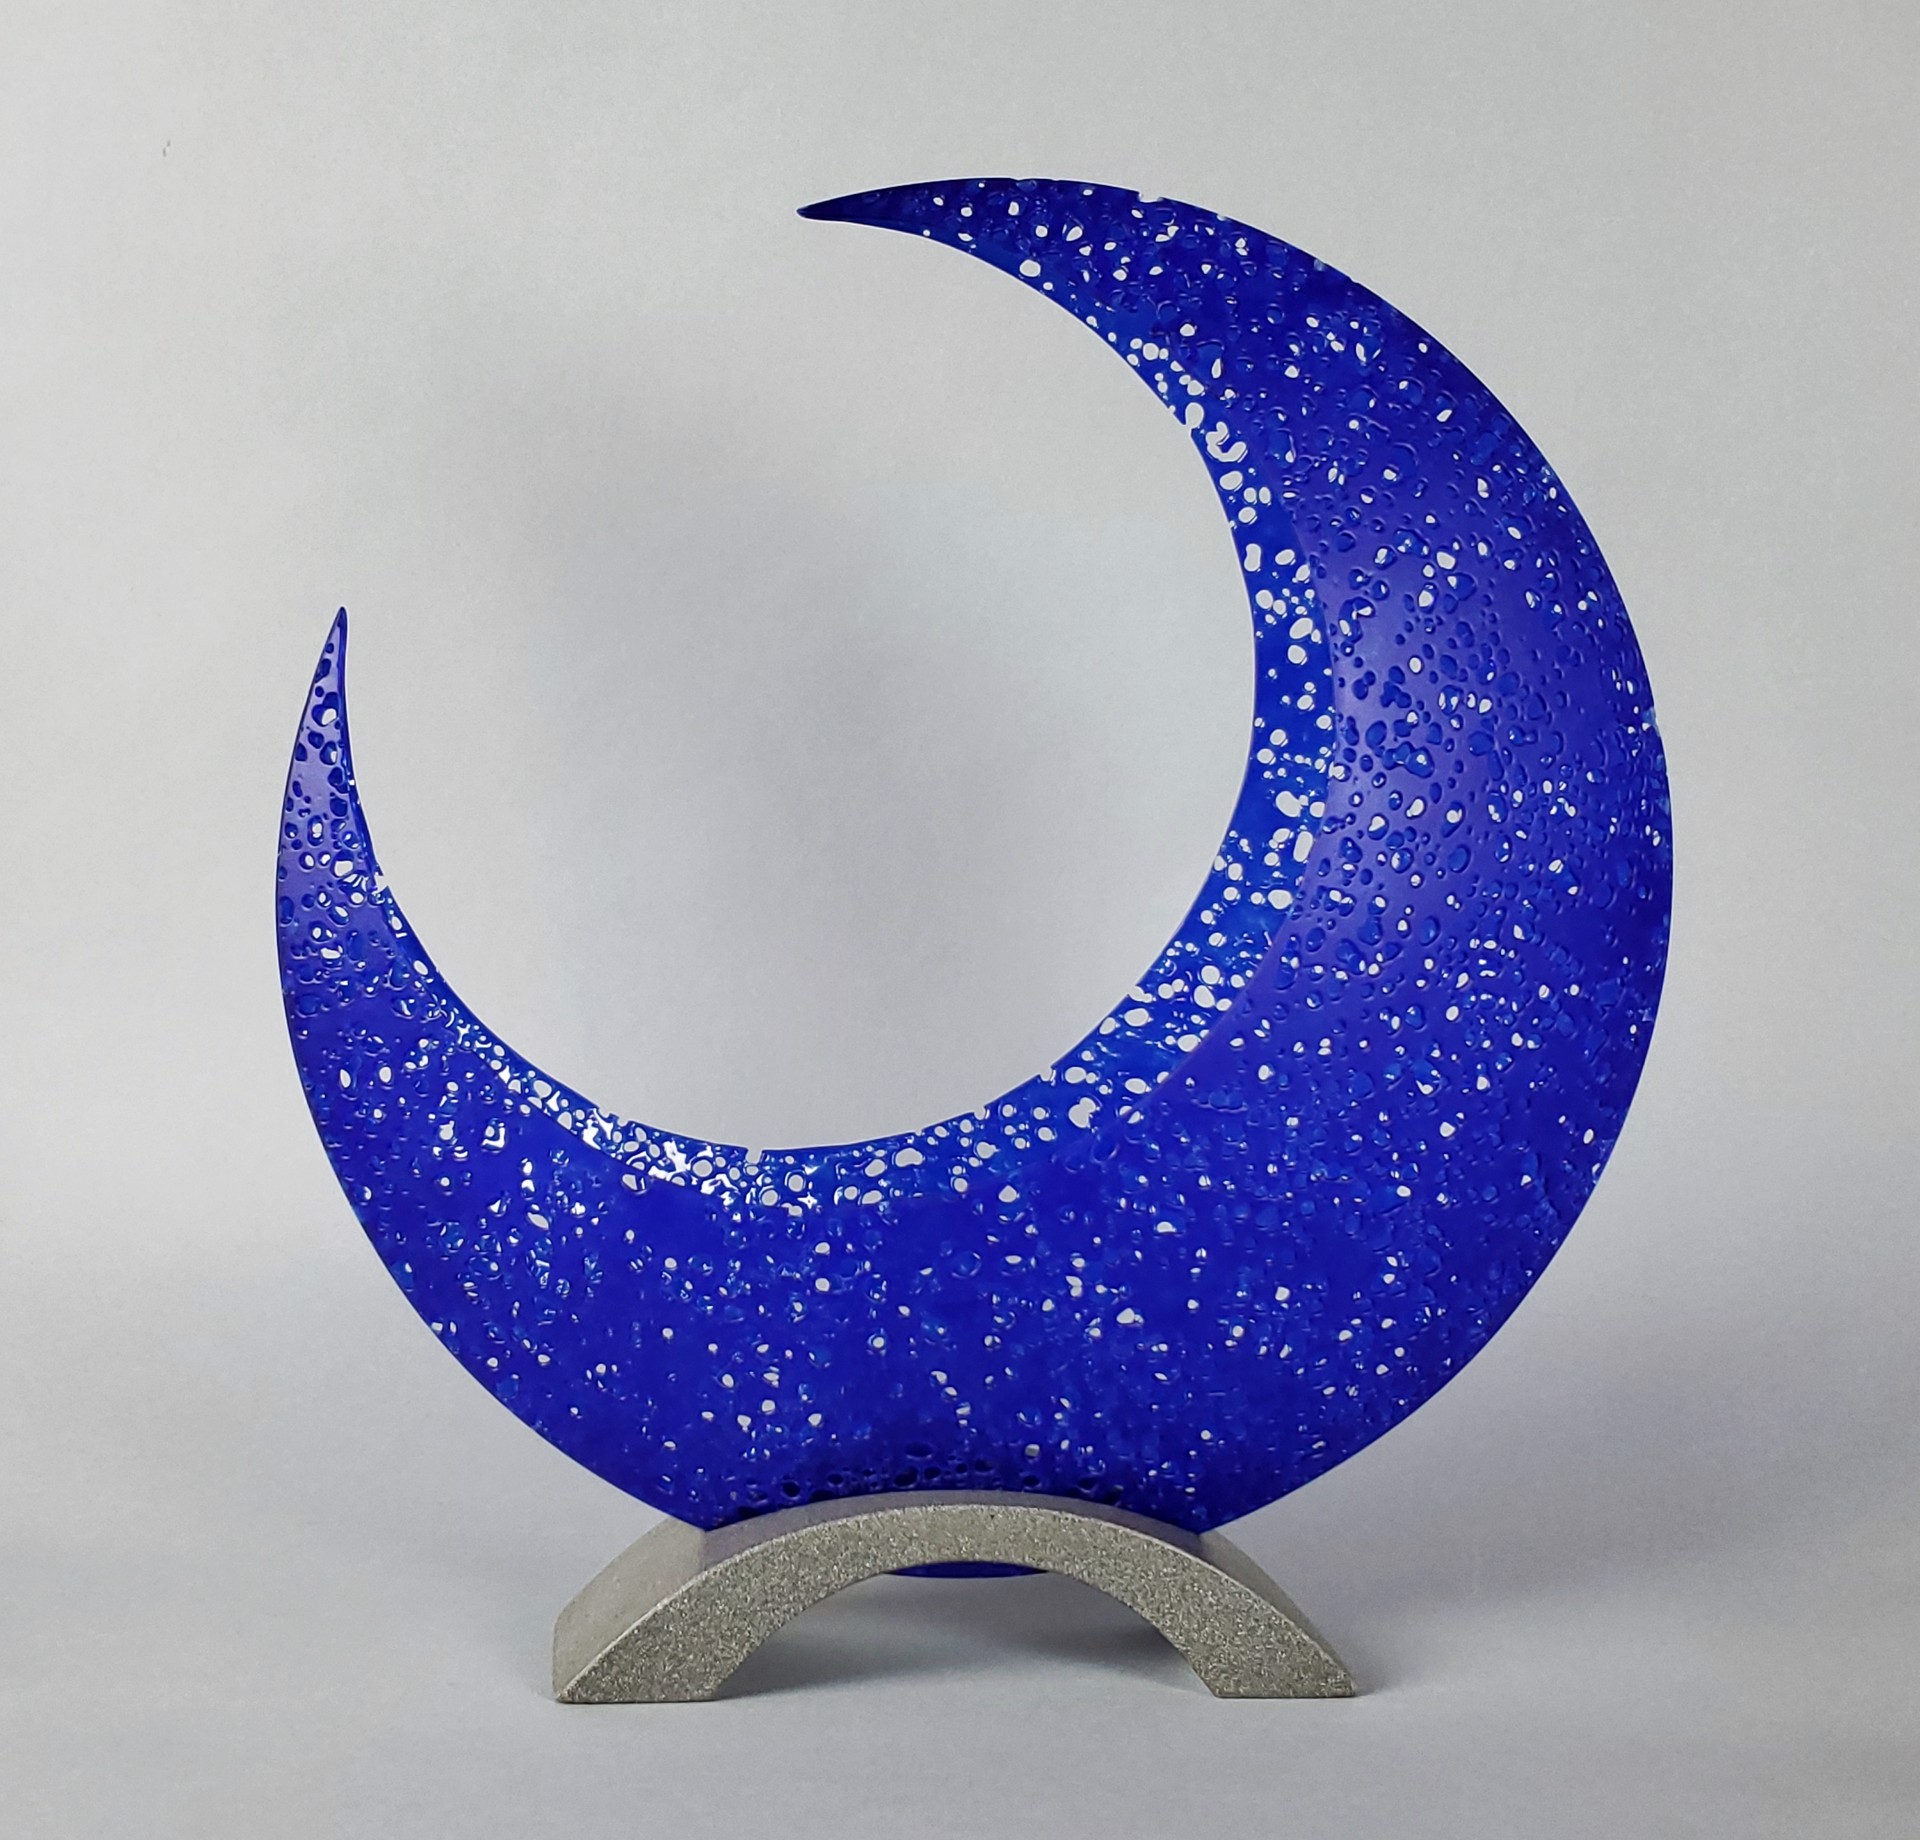 Luna Azulado by Karen Bexfield